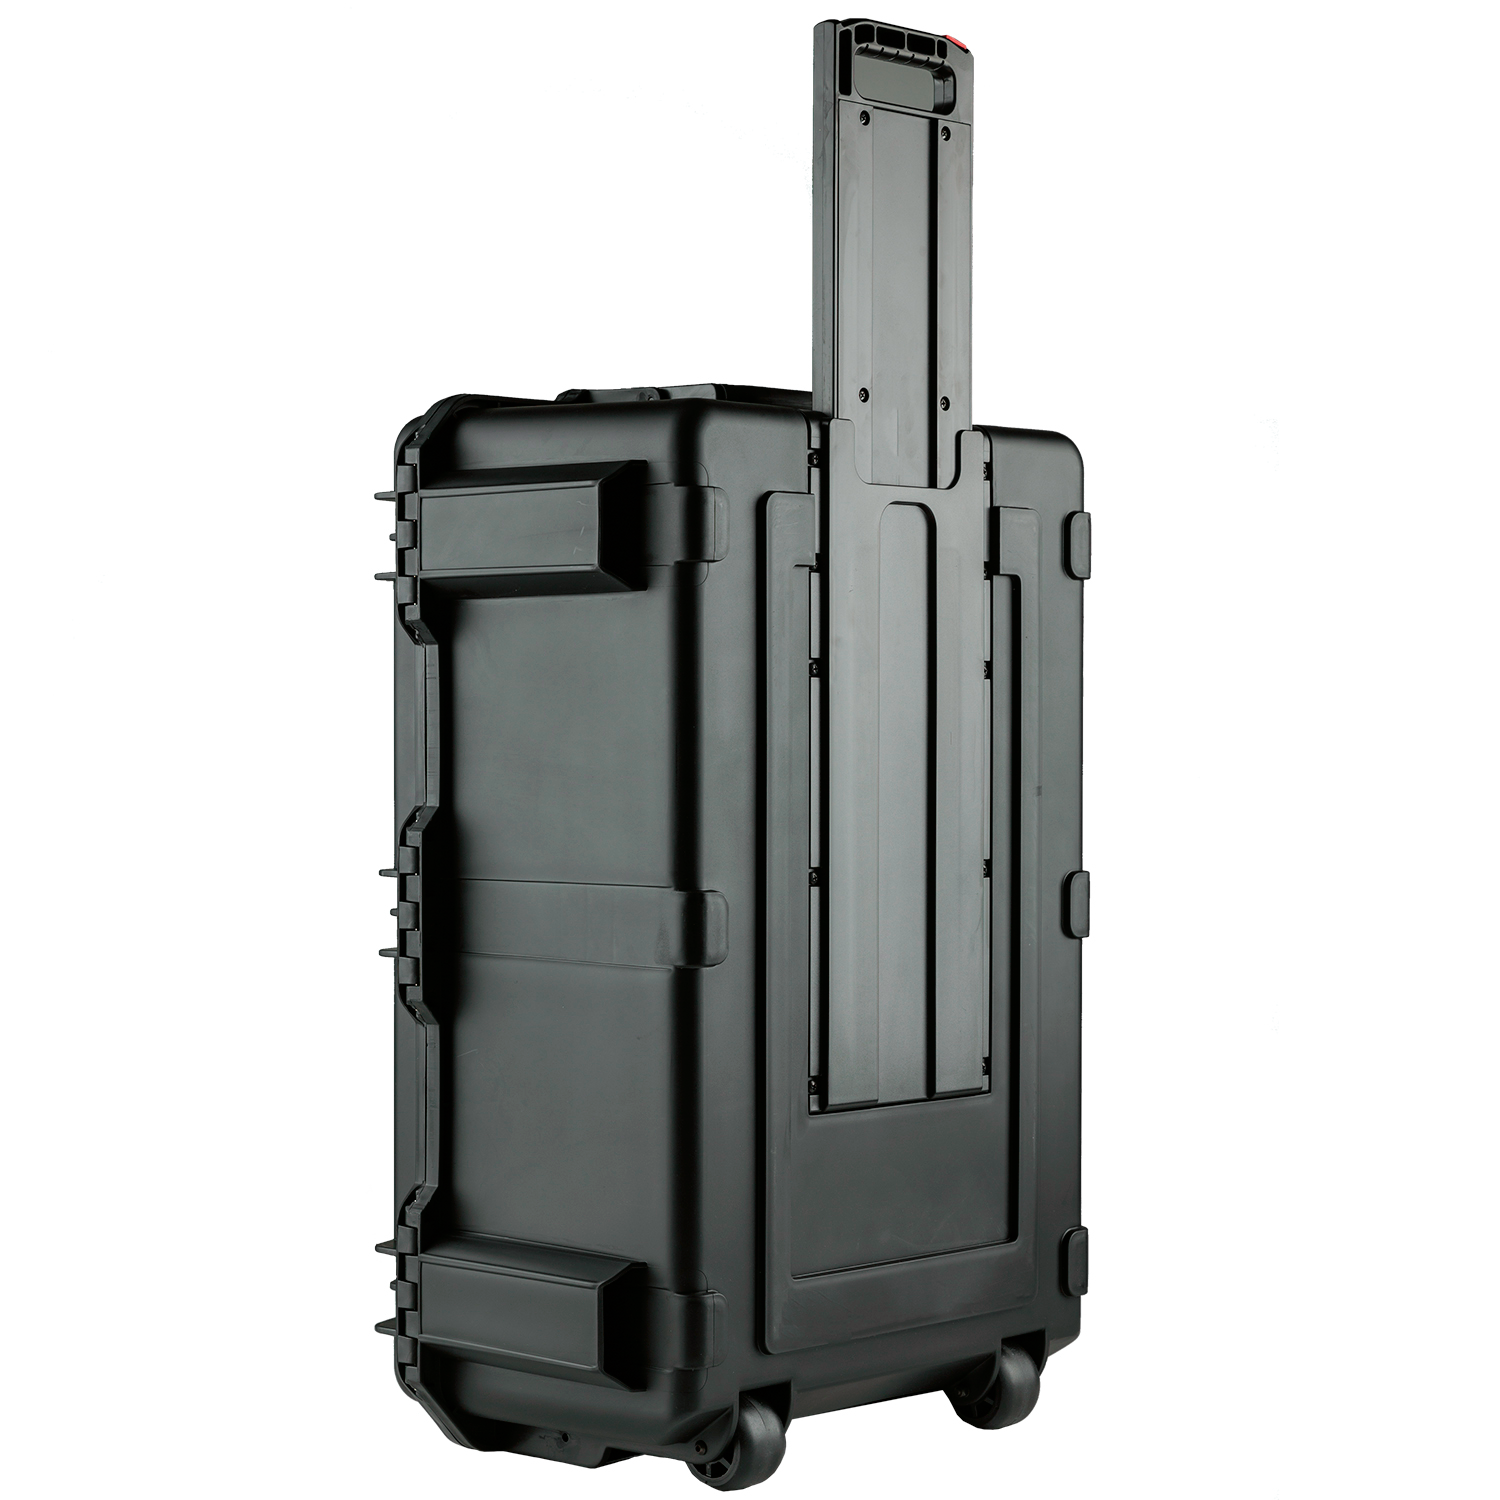 IKAN PT3700 Teleprompter & Hard Case Travel Kit